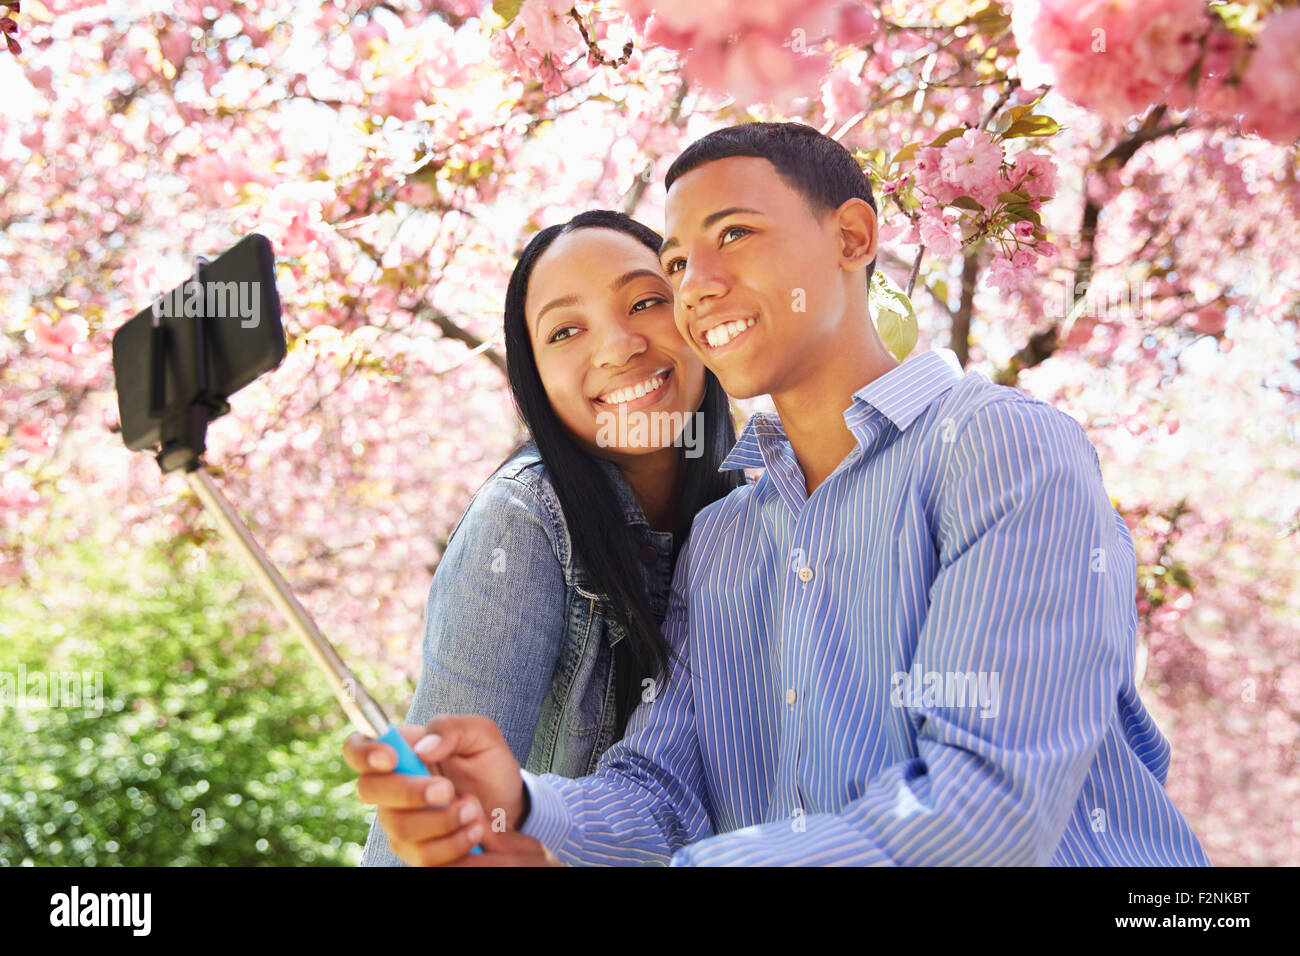 Les amis taking self portrait en vertu de l'arbre en fleurs Banque D'Images